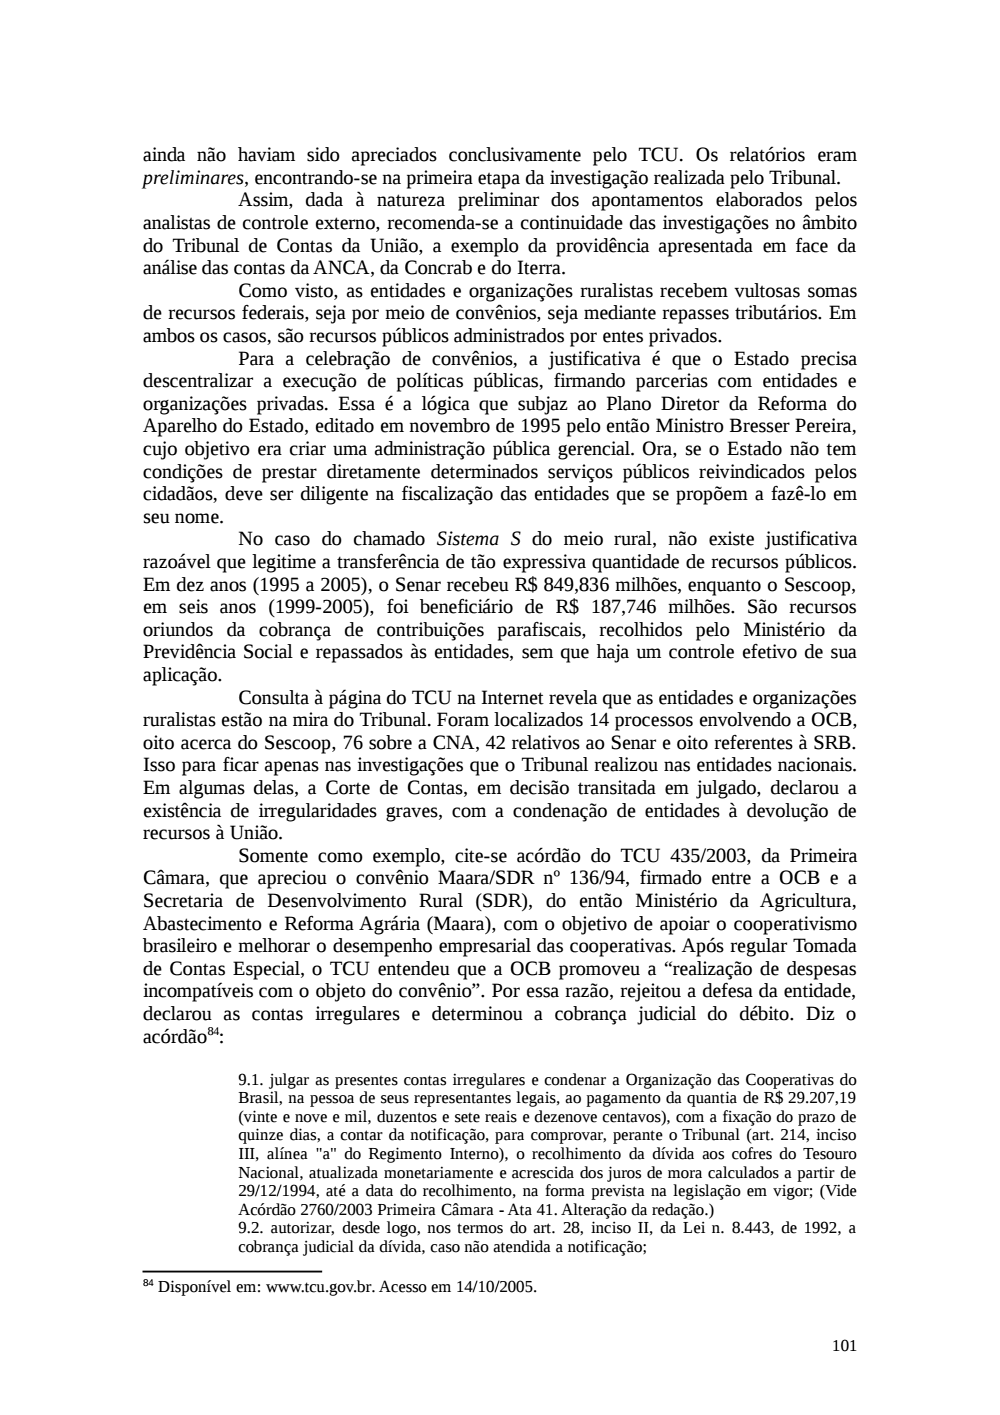 Page 101 from Relatório final da comissão